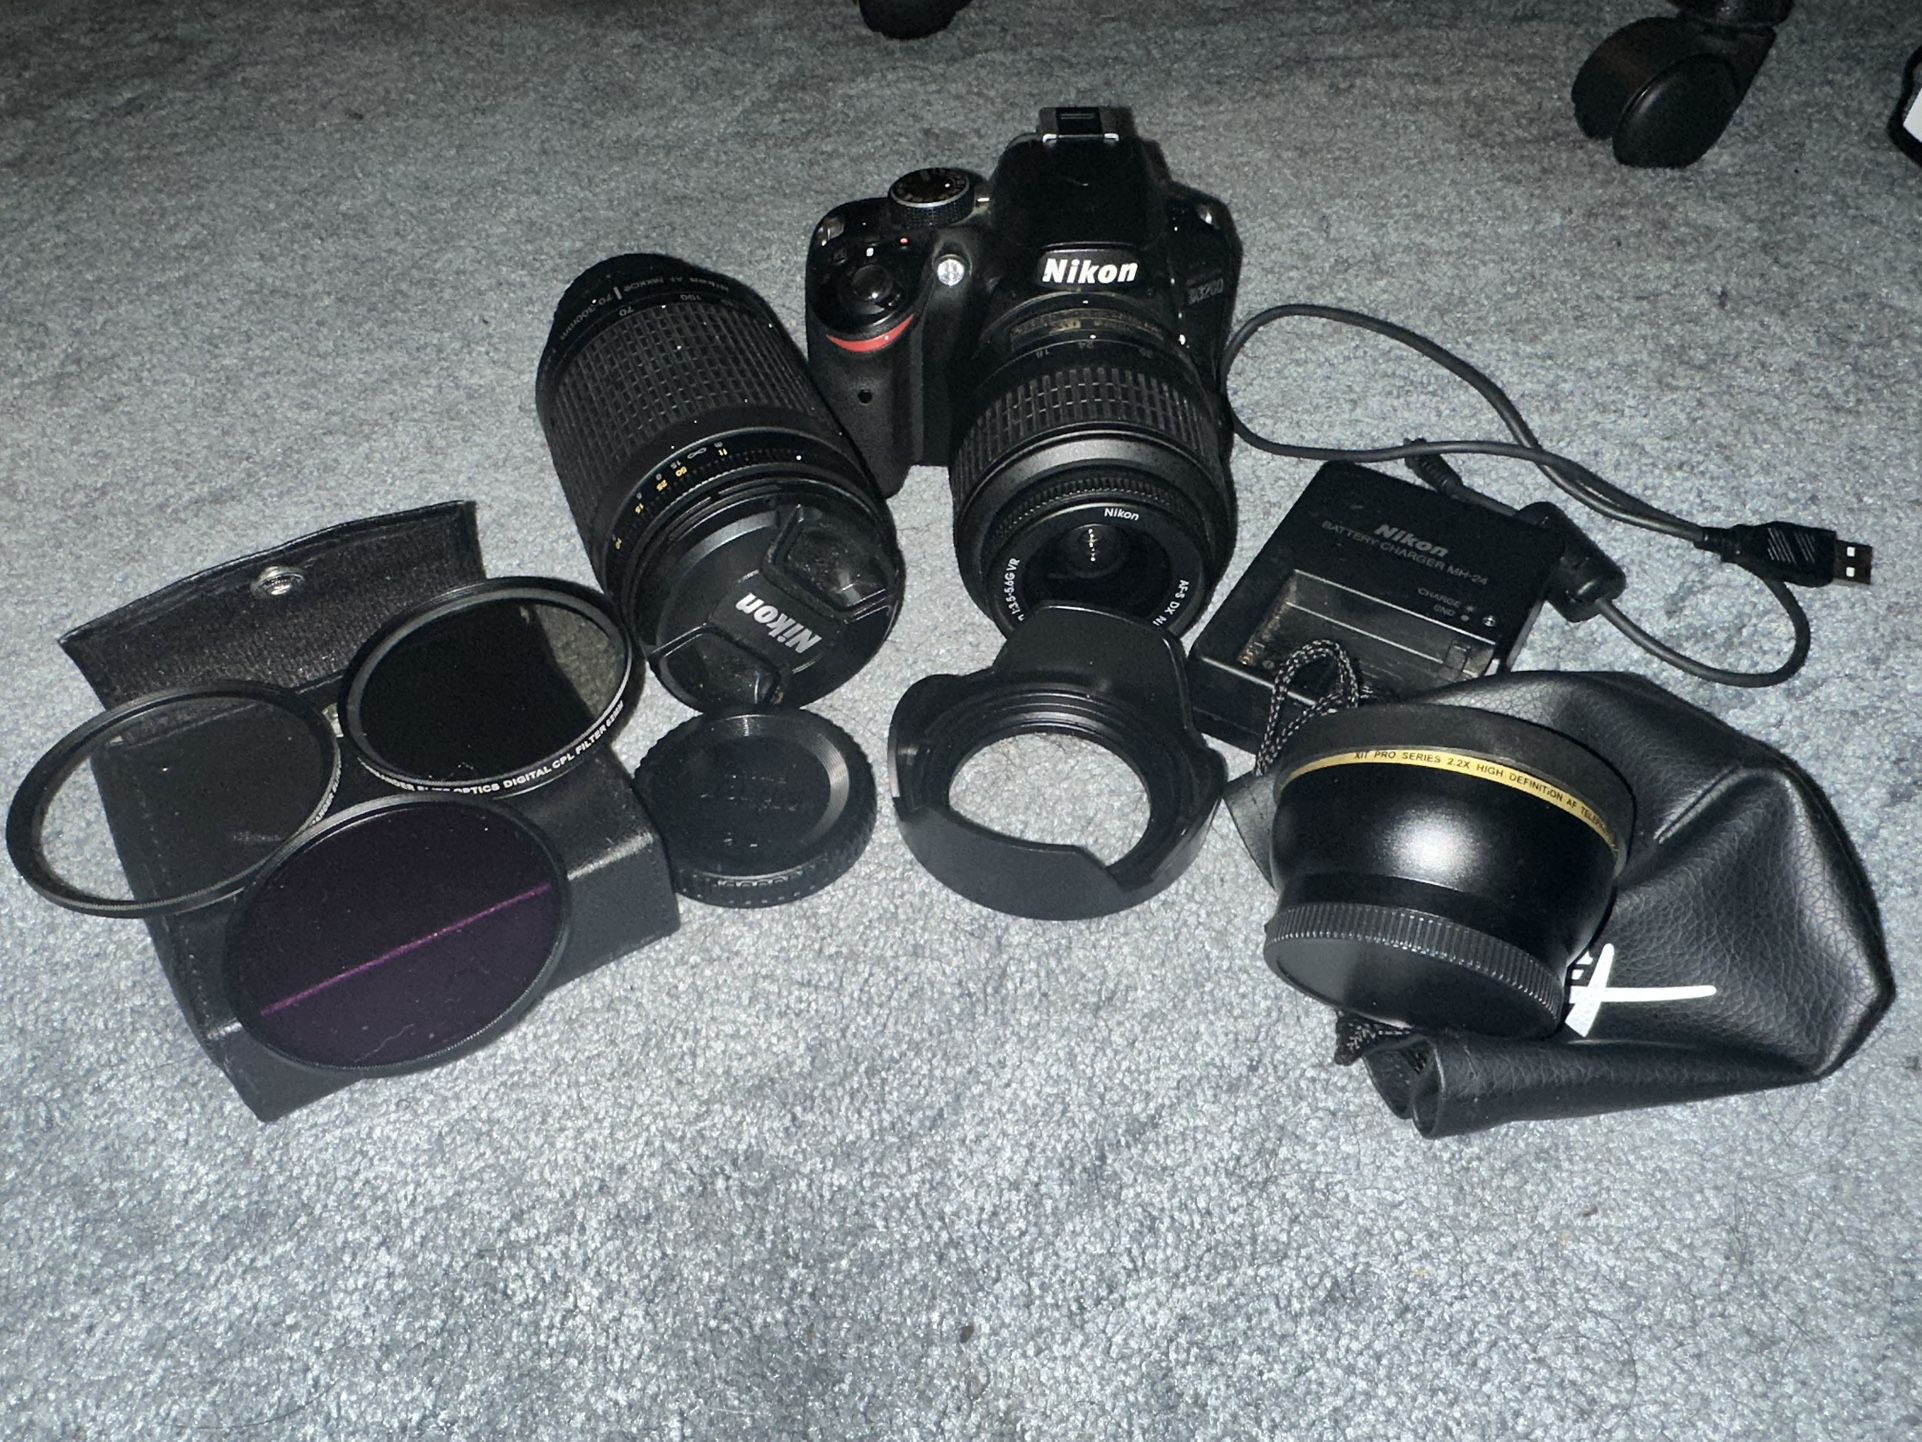 Nikon d3200 W/ Accessories 